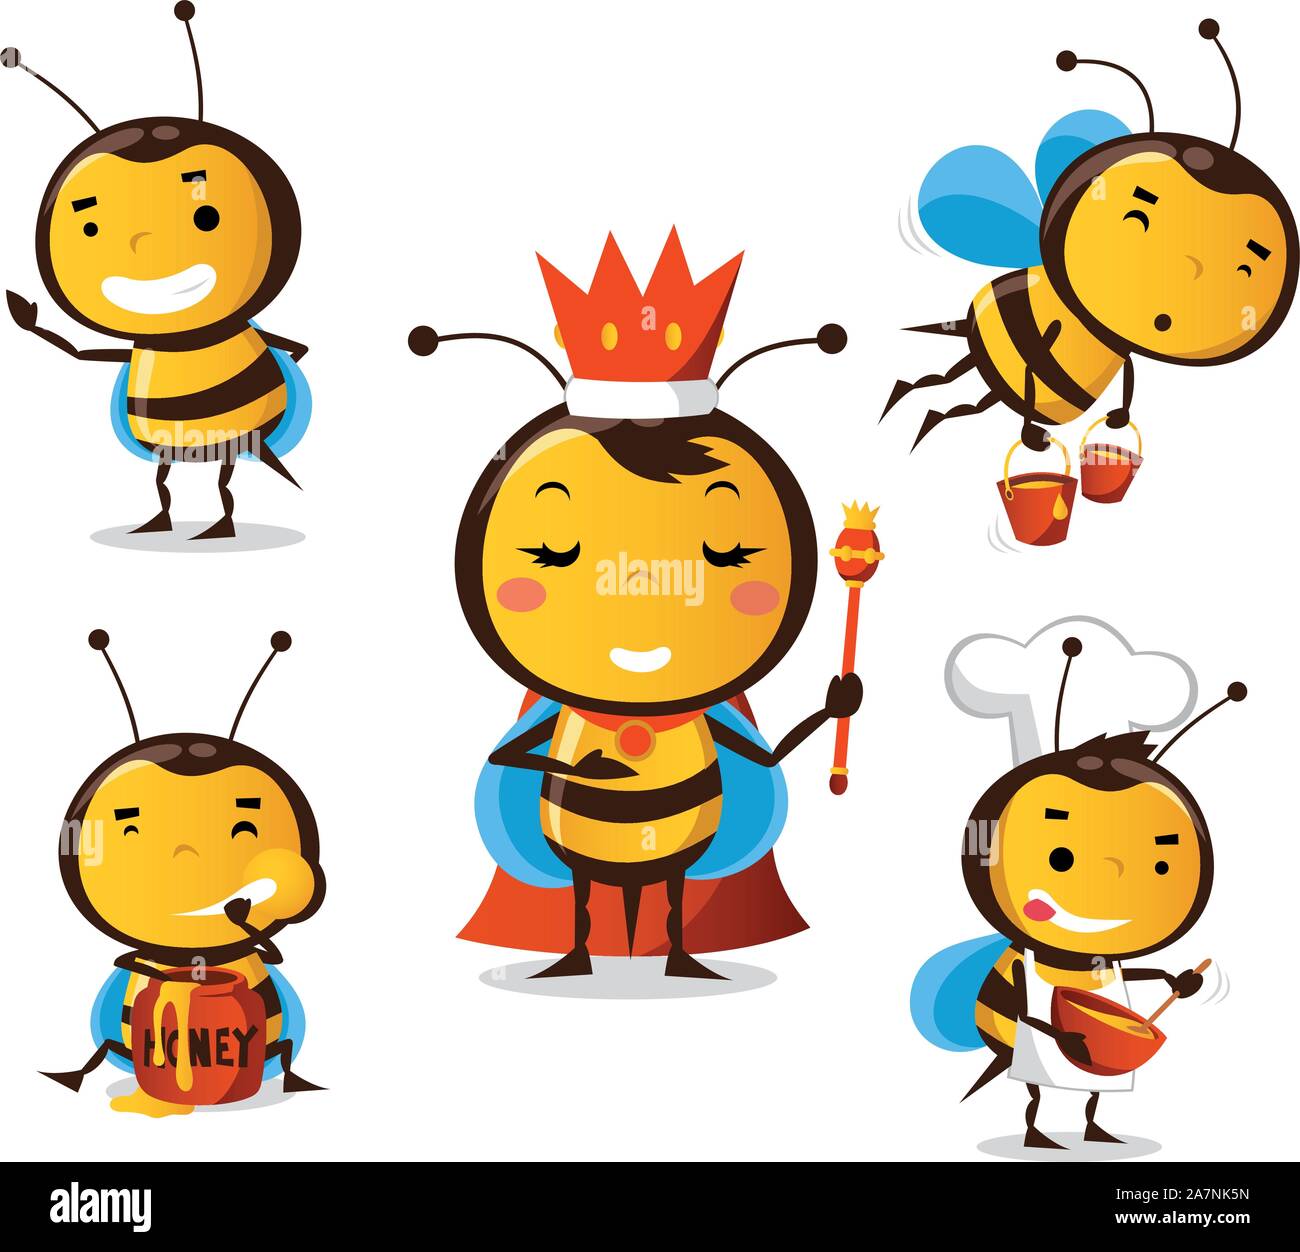 Biene-Aktion-set 1, mit 5 süße Bienen. Stand mit Bienen in verschiedenen Größen und Situationen wie Biene, Bienenkönigin, Bienen Honig, Biene, Essen Hon tragen Stock Vektor